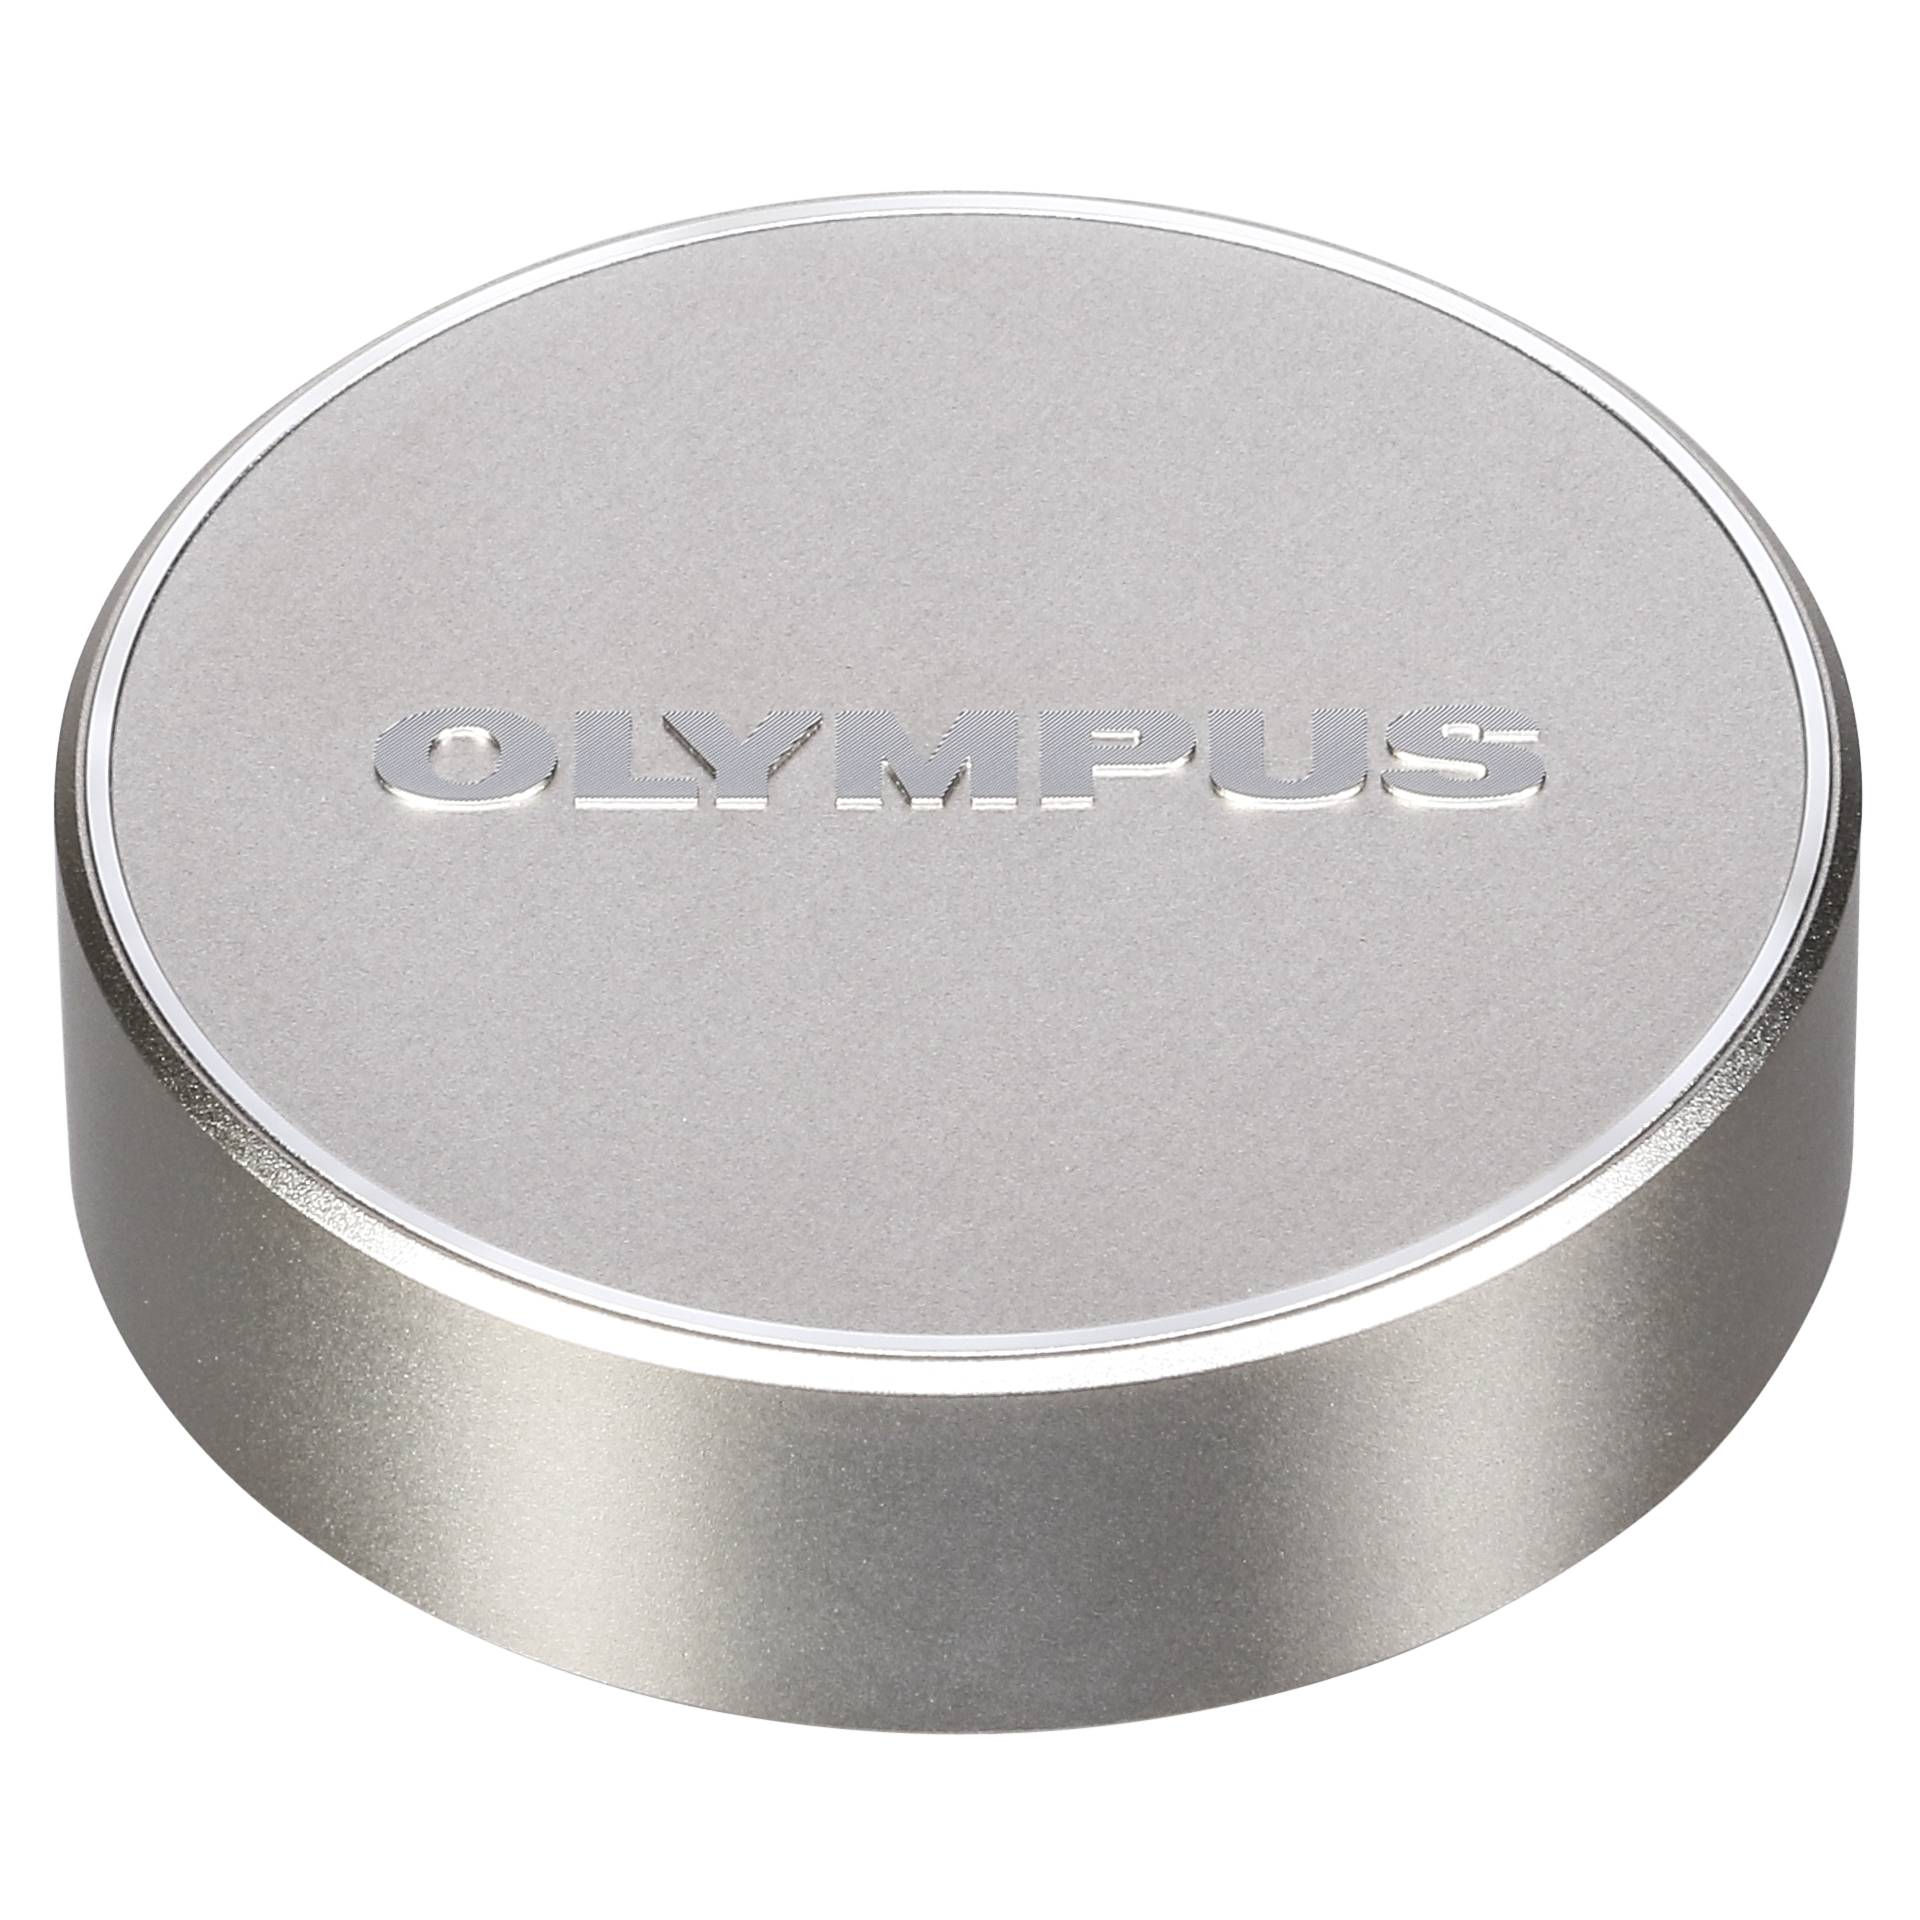 Olympus LC-61 tappo obiettivo per M7518 argento metallo